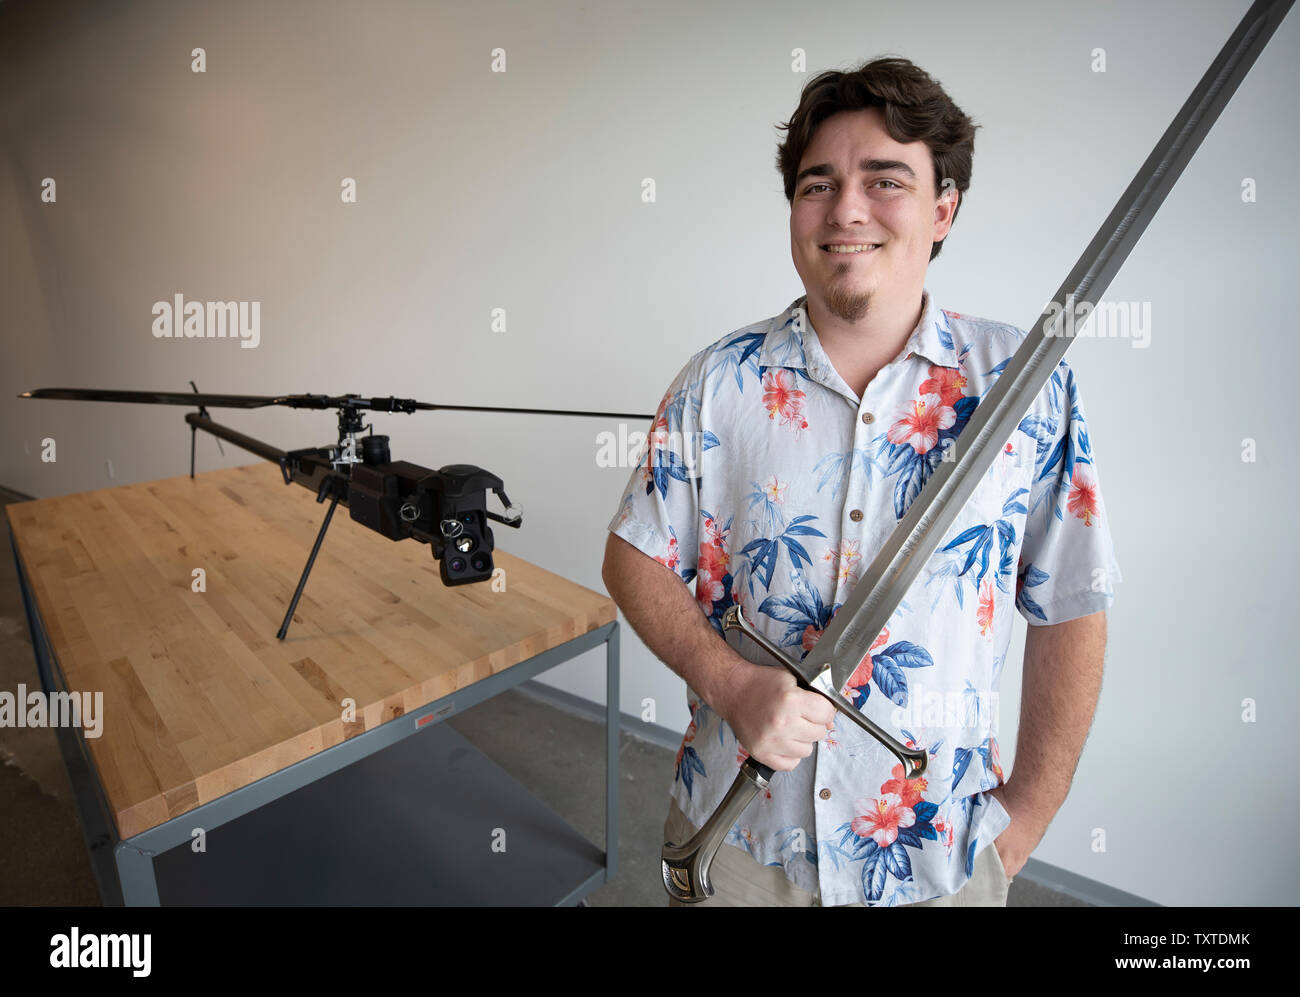 Palmer Luckey, fondatore delle industrie Anduril con loro reticolo Drone fantasma. Anduril è chiamato dopo la spada nella trilogia del Signore degli Anelli Foto Stock